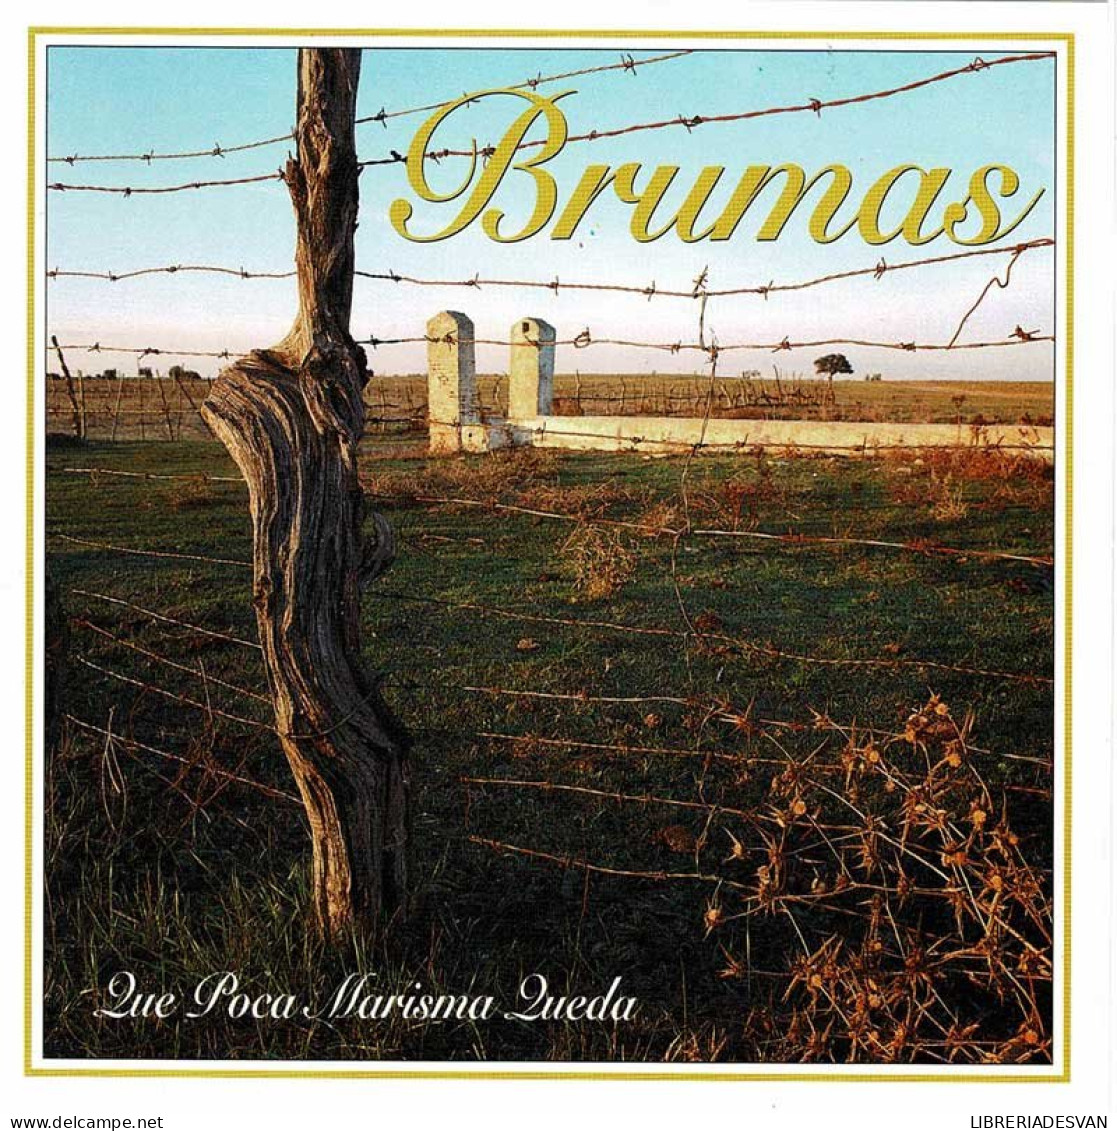 Brumas - Qué Poca Marisma Queda. CD - Andere - Spaans